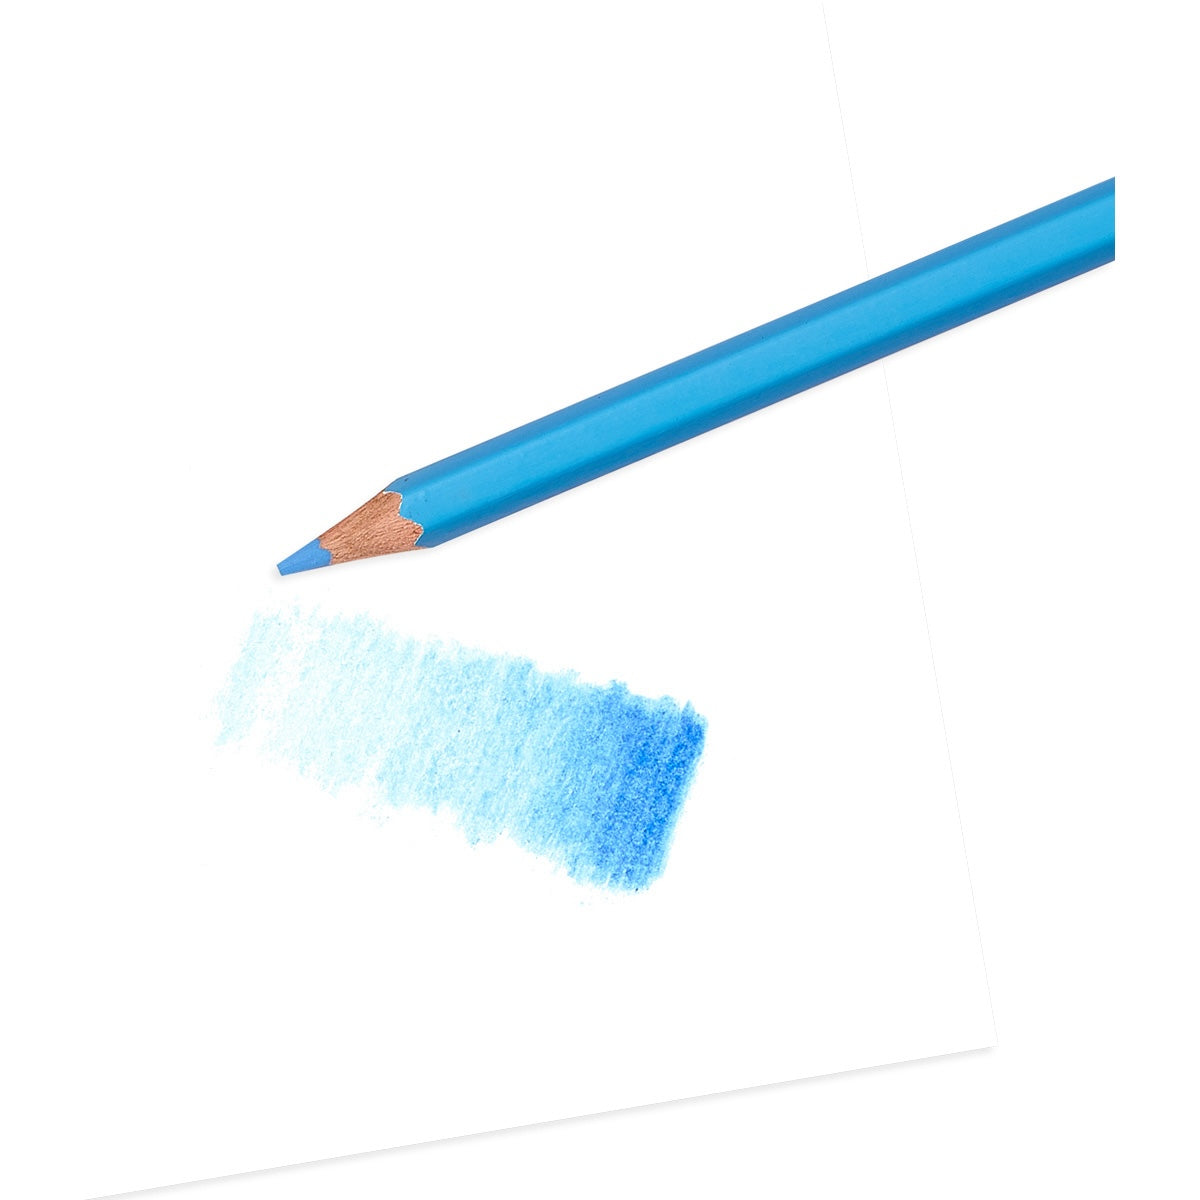 Breng tekeningen tot leven met de Pastel Hues colored pencils van het merk Ooly. Een set van 24 pastelkleurige potloden die zorgen voor subtiele kleurschakeringen. Geschikt vanaf 3 jaar. Leuk als cadeau. VanZus